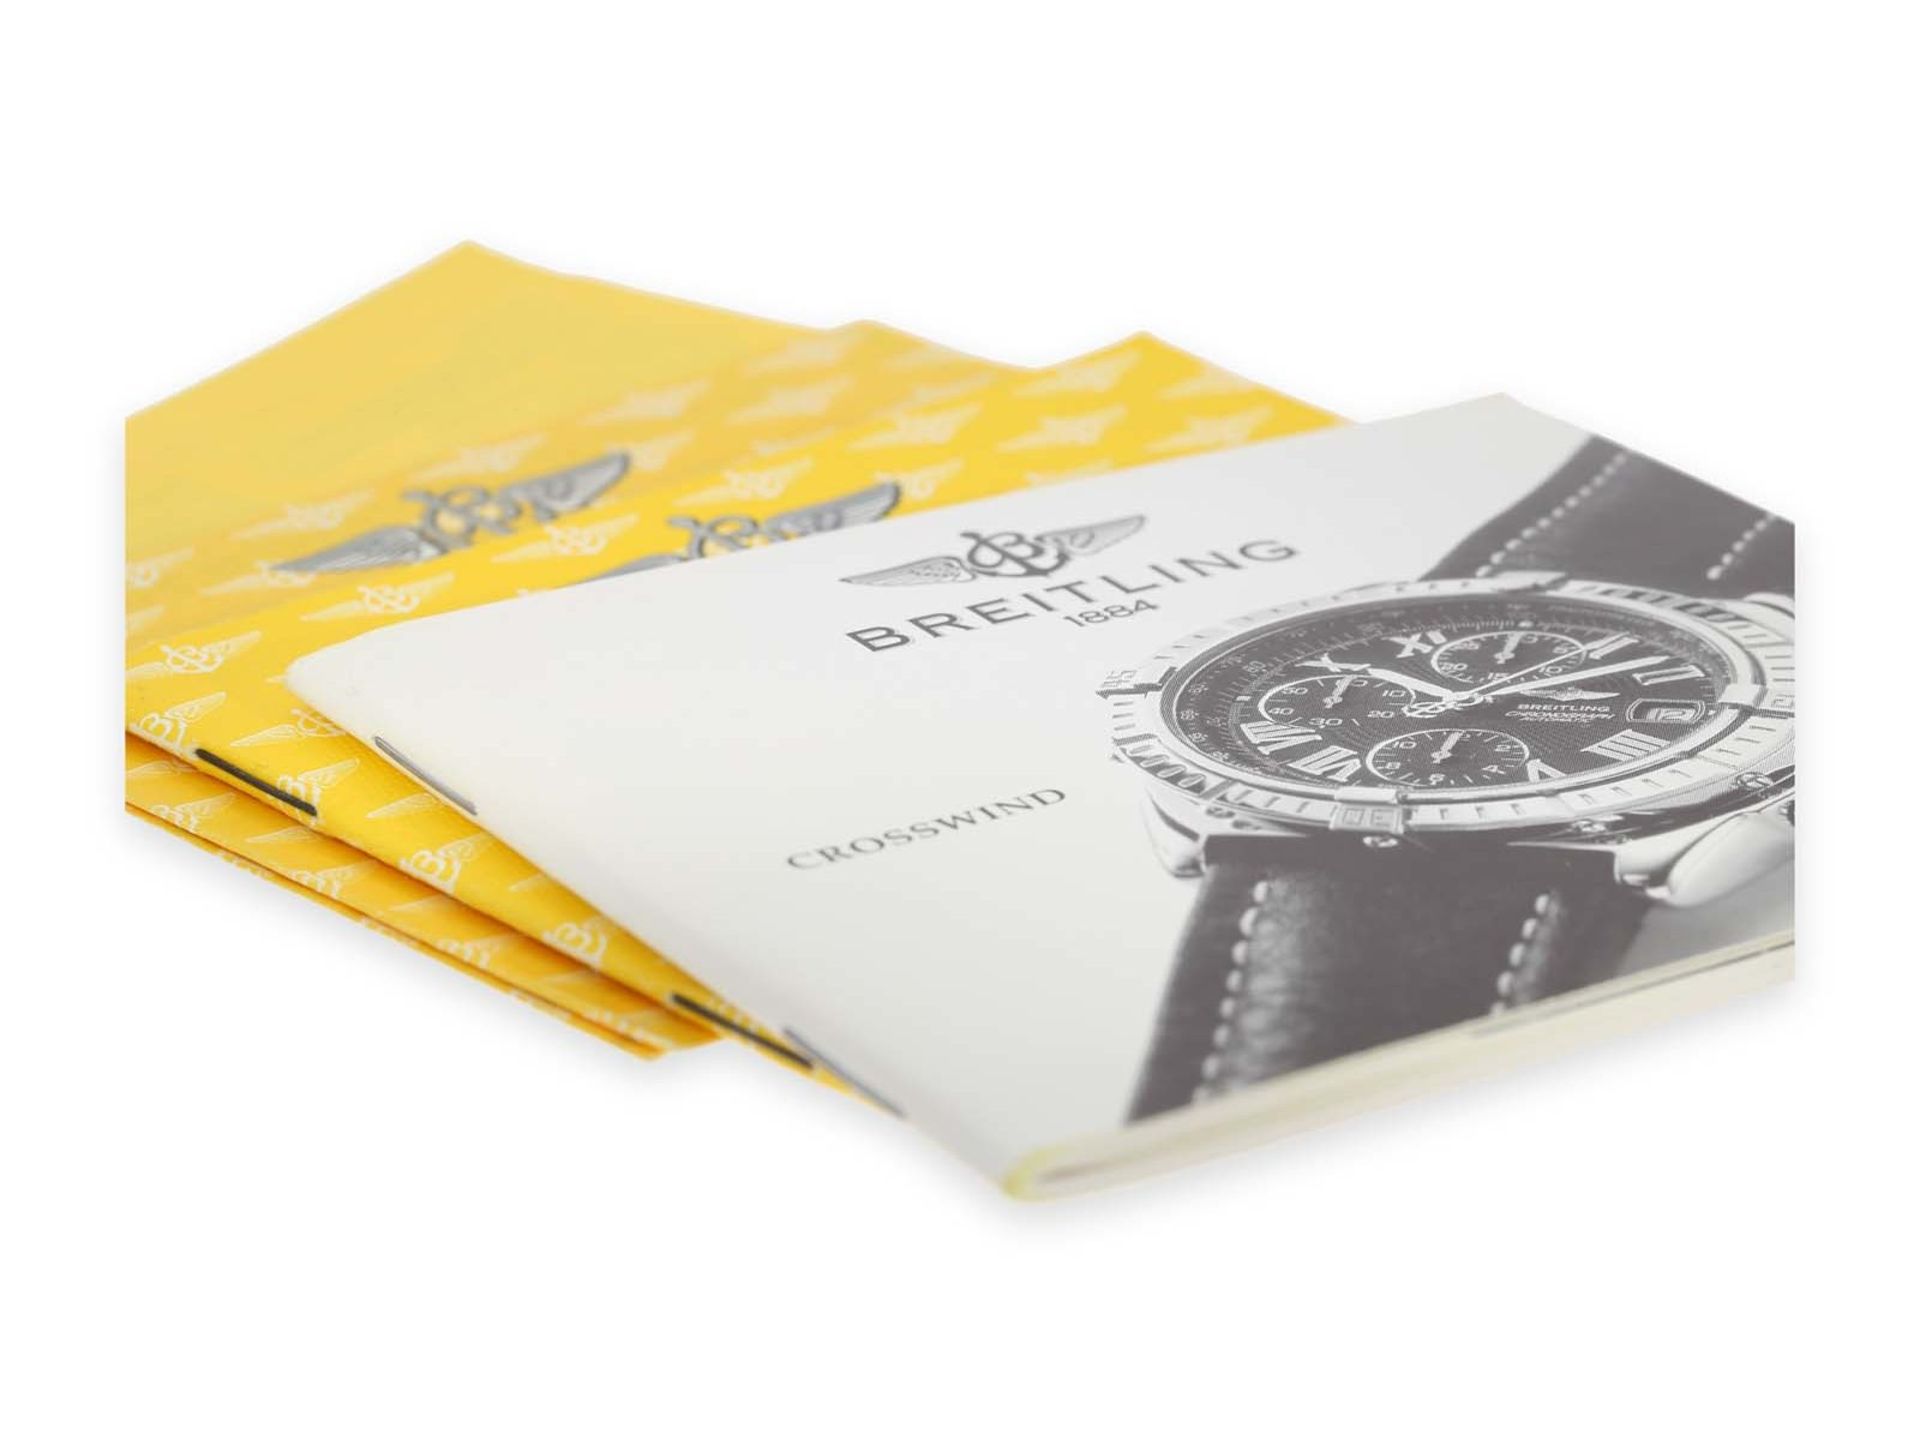 Armbanduhr: hochwertiger Breitling Chronograph, Chronometer "Crosswind" Ref. B13355, Originalbox und - Bild 3 aus 4